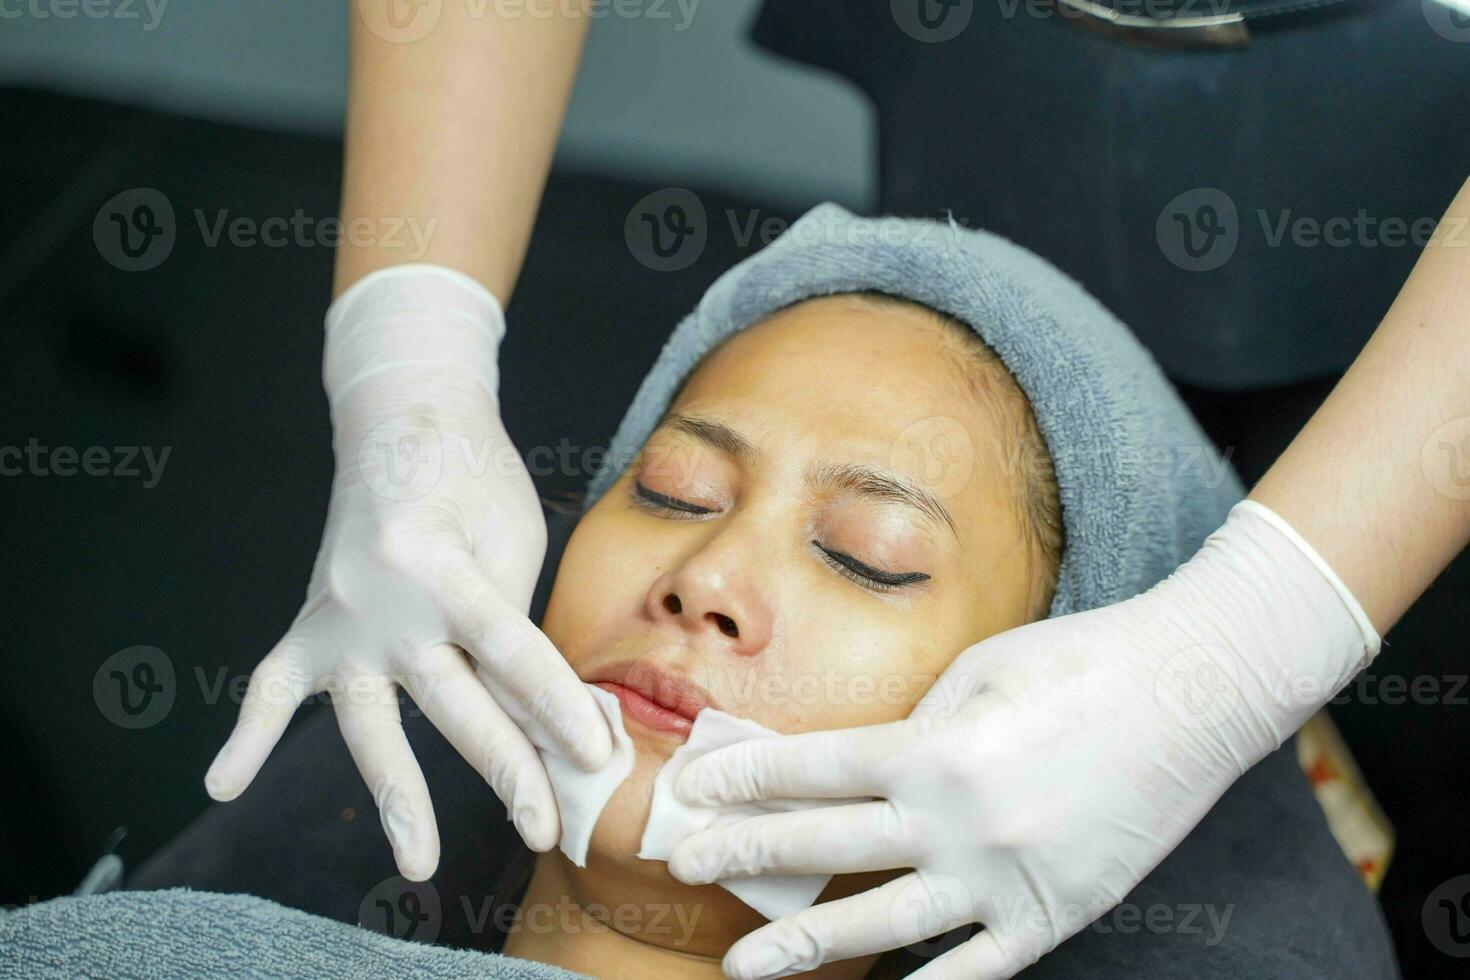 kosmetolog använda sig av en bomull vaddera till rena på kvinna klient ansikte i skönhet klinik. foto